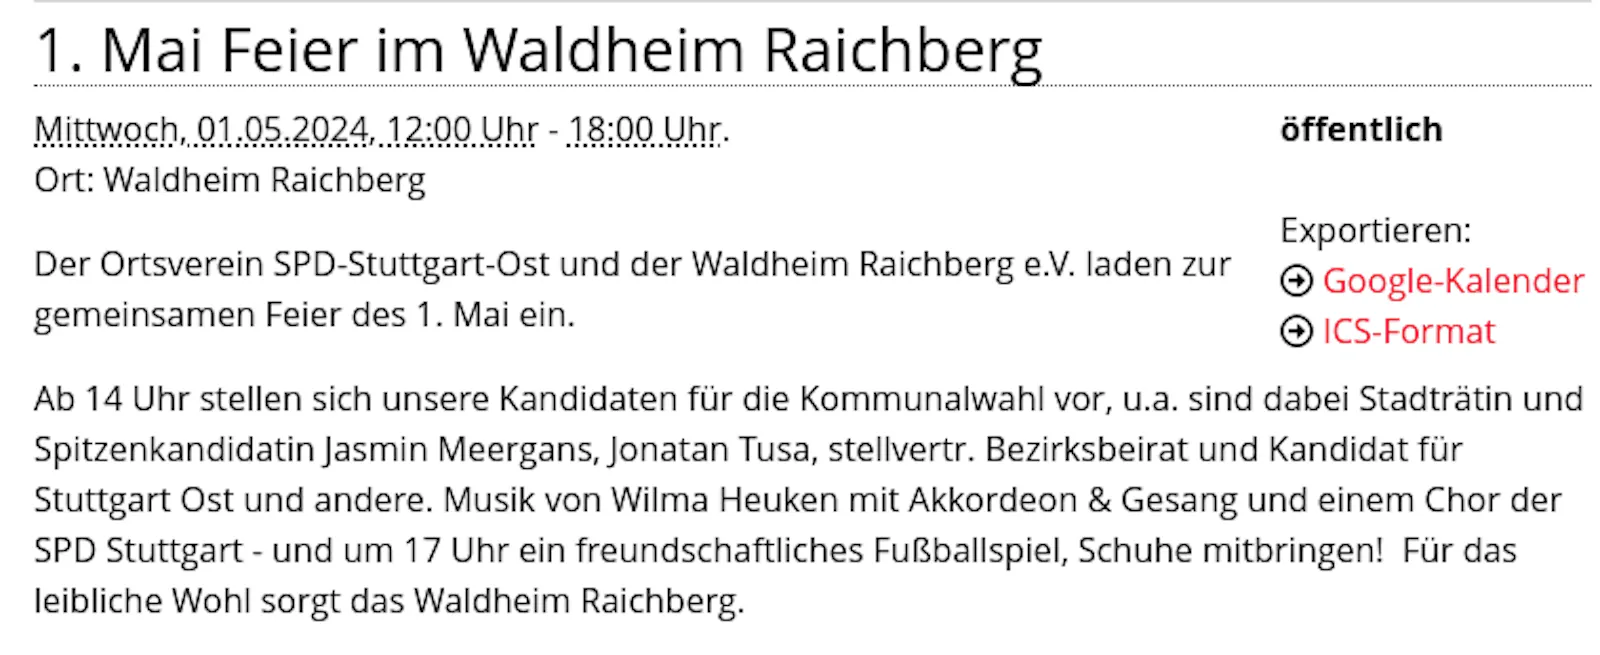 Wahldheim Raichberg SPD Stuttgart-Ost